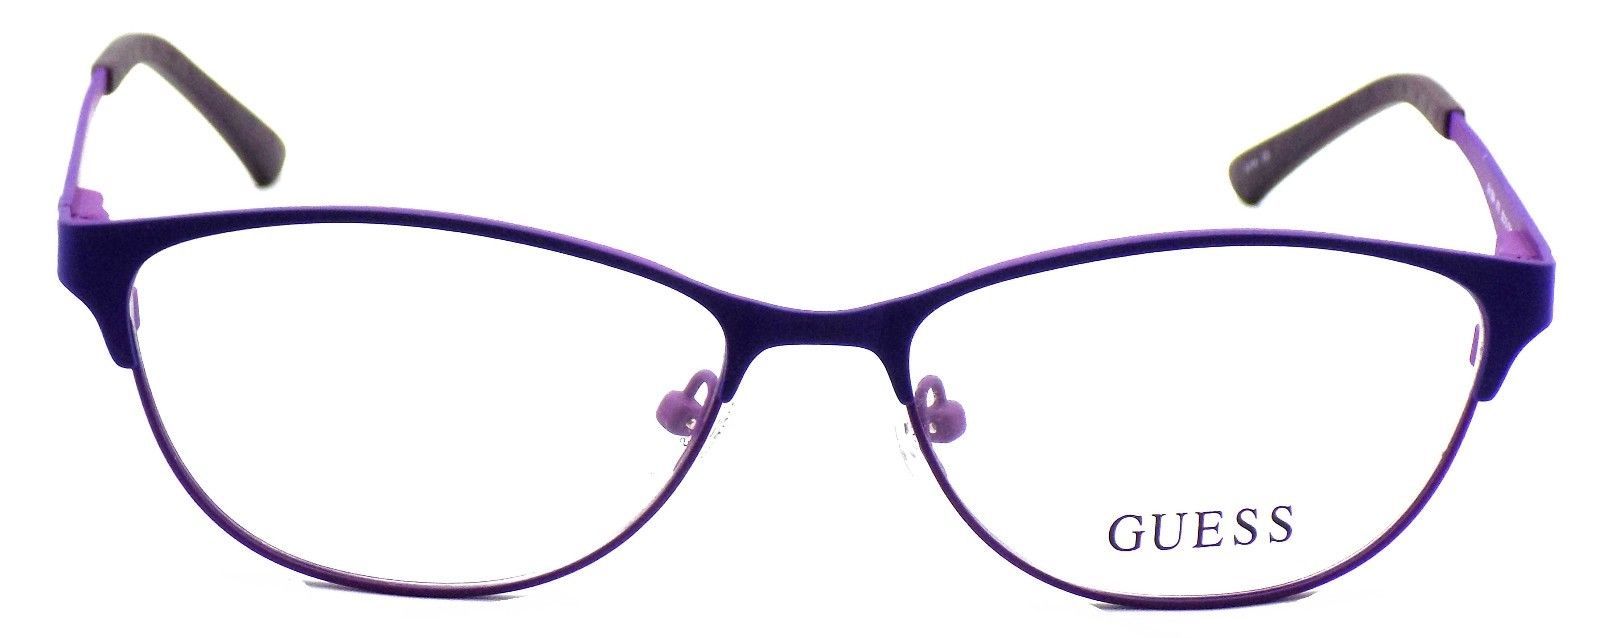 2-GUESS GU2504 079 Women's Eyeglasses Frames 53-15-135 Matte Lilac + CASE-664689697632-IKSpecs